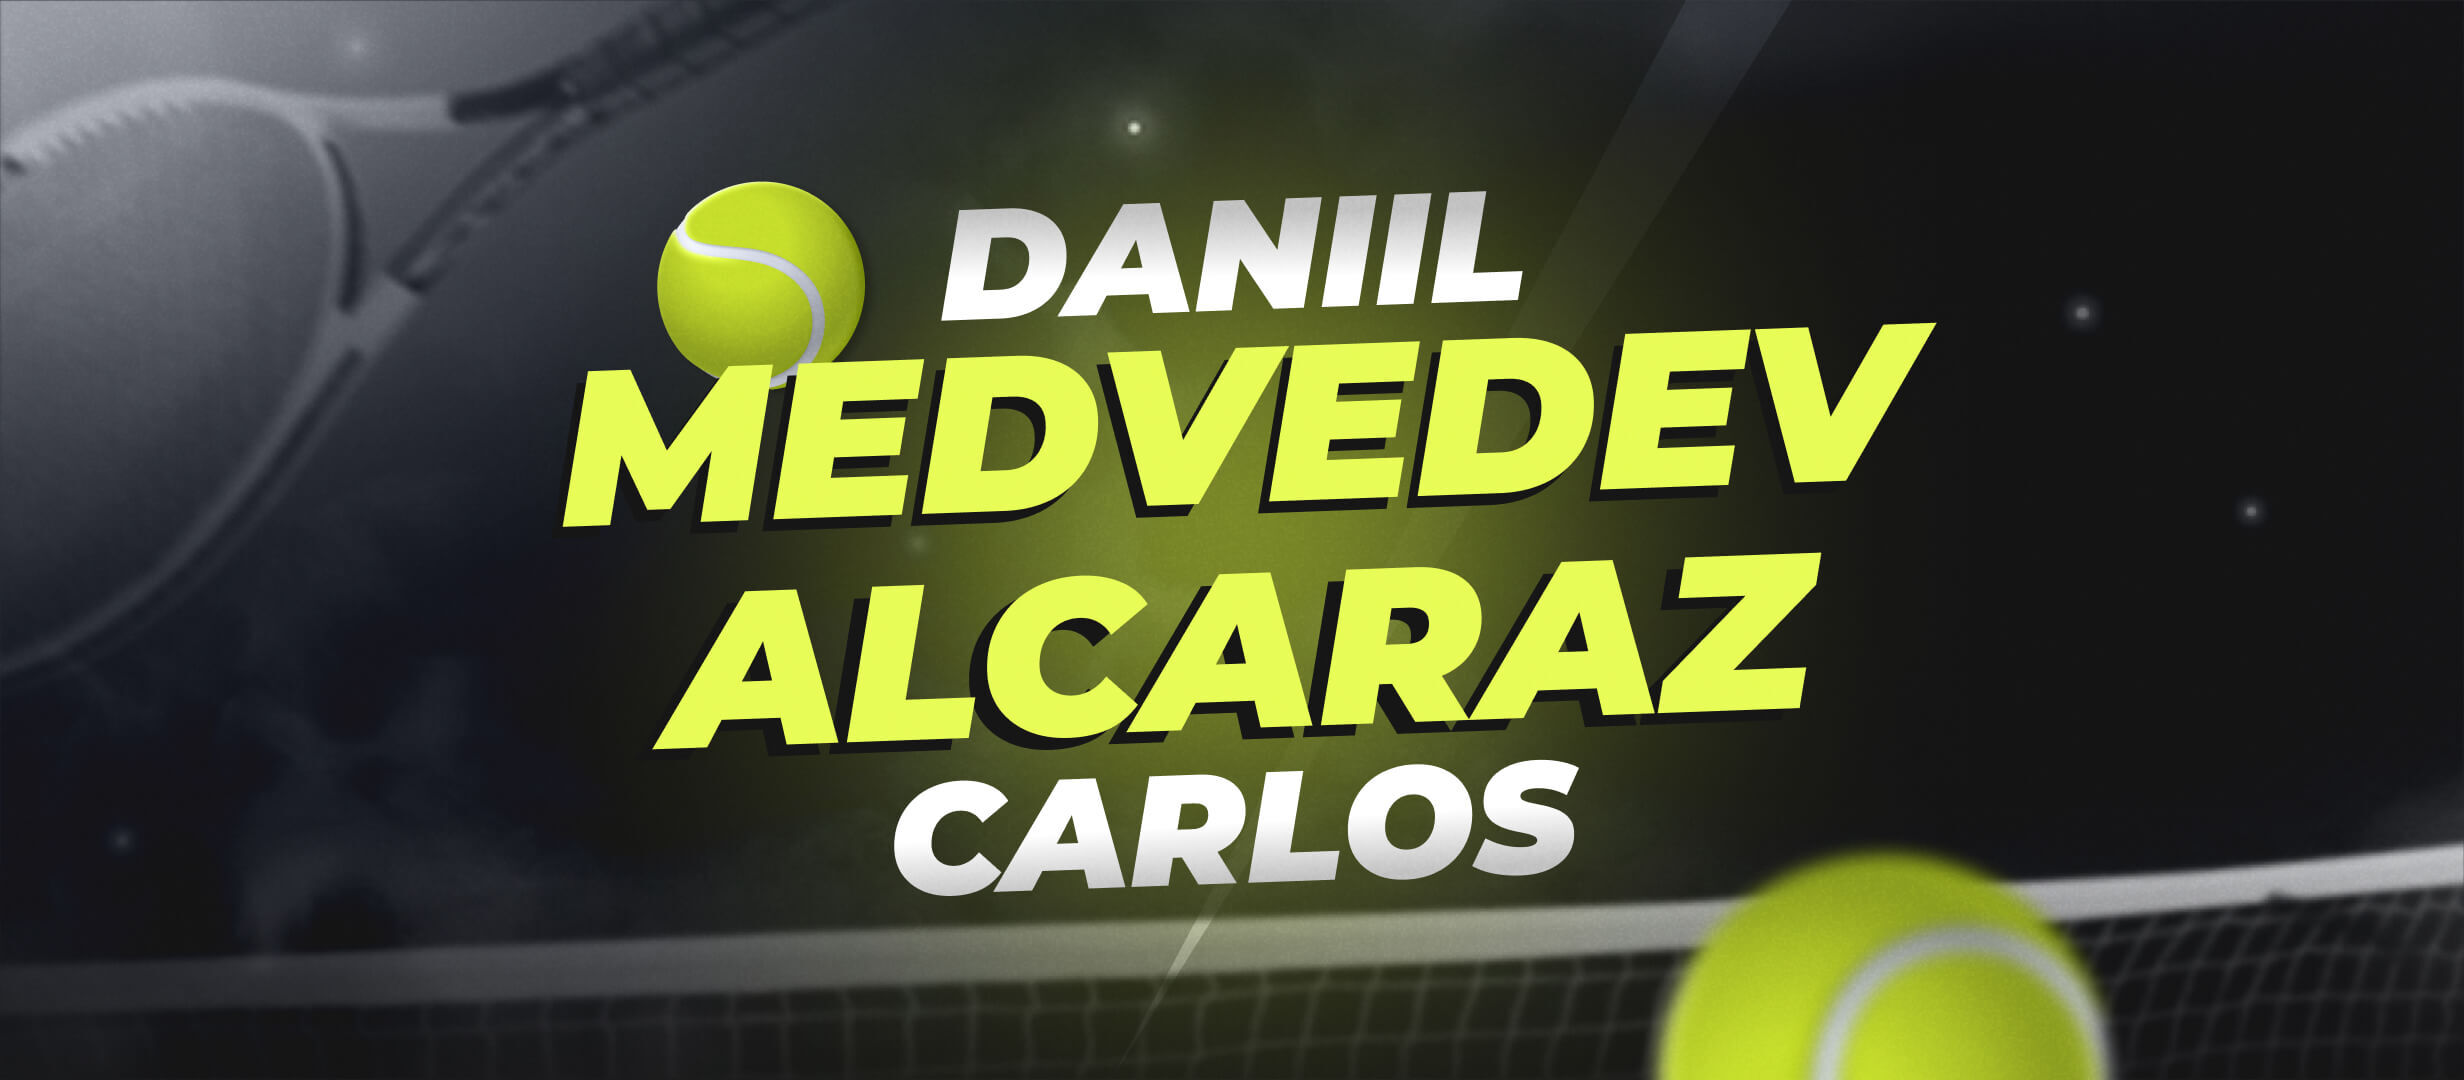 Daniil Medvedev vs Carlos Alcaraz Predictions: The Wimbledon Semi-finals